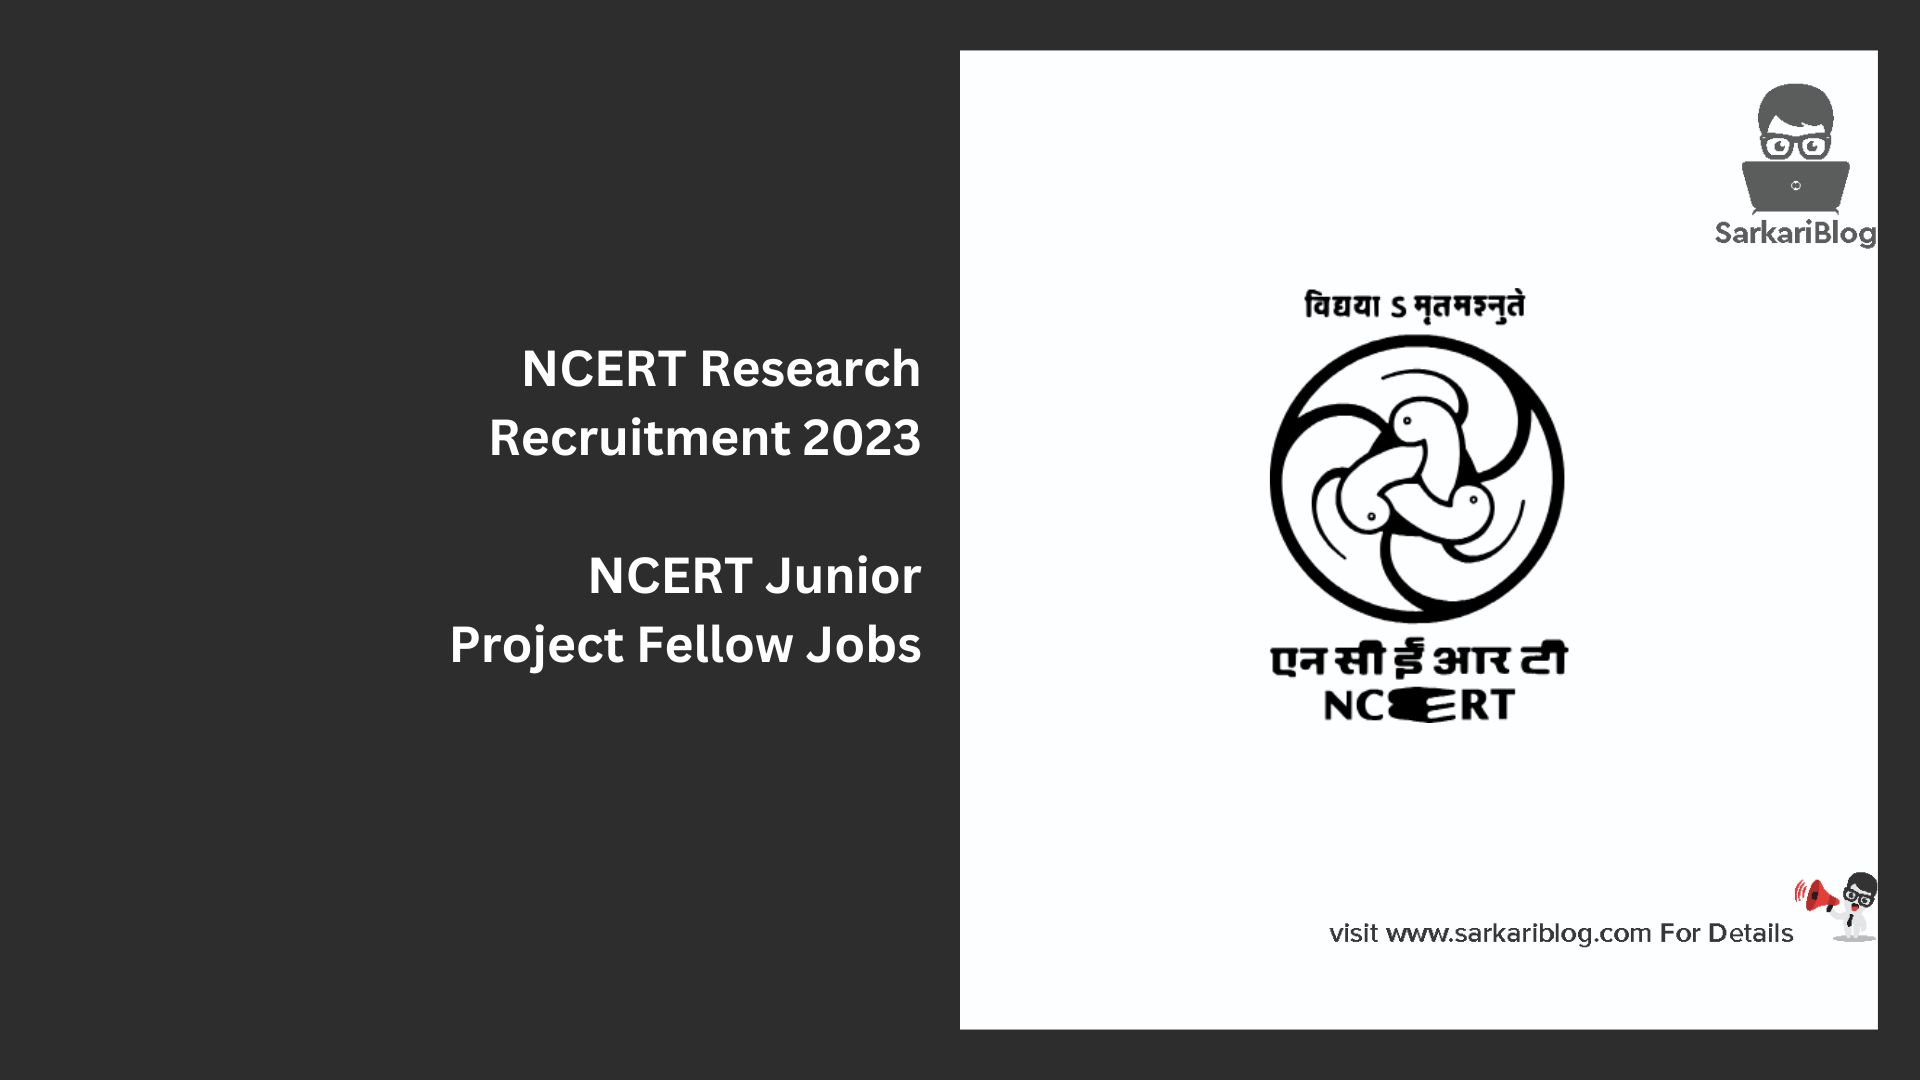 NCERT Research Recruitment 2023